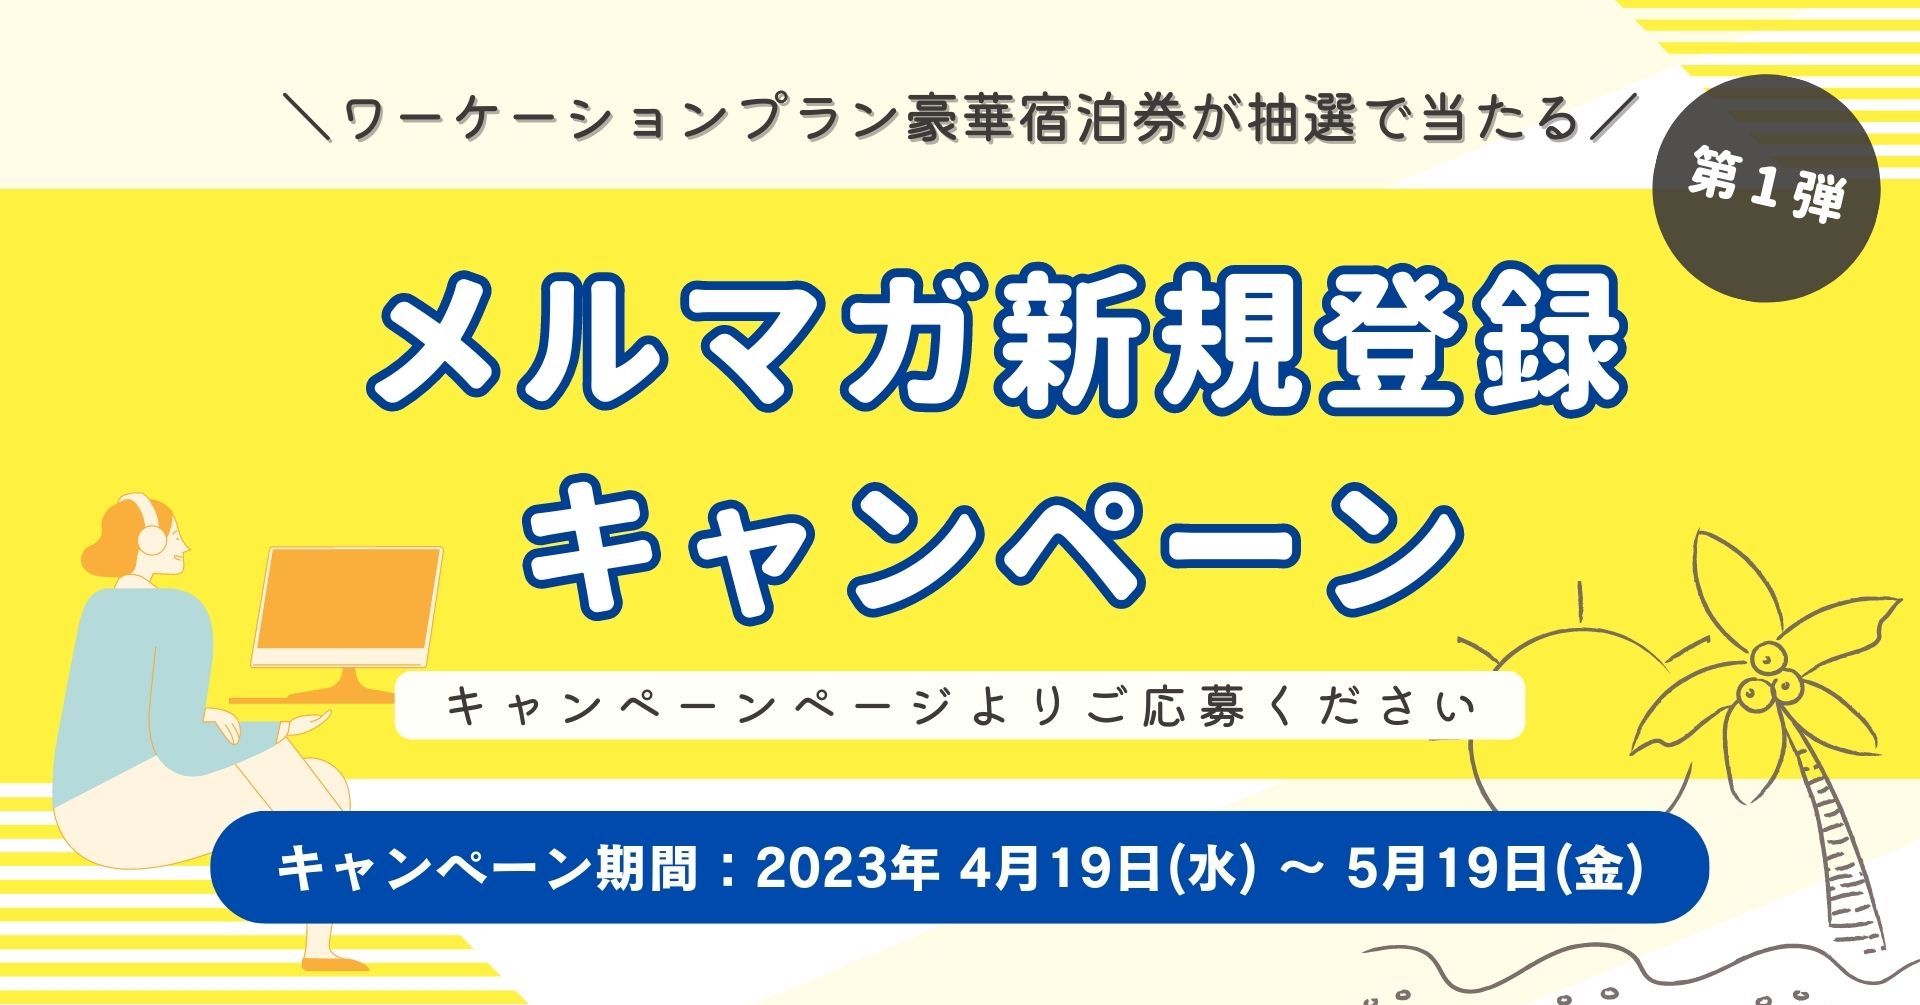 地方移住・多拠点居住を推進する「複住スタイル」にて、和歌山県白浜町でワーケーションができるキャンペーンを開始！